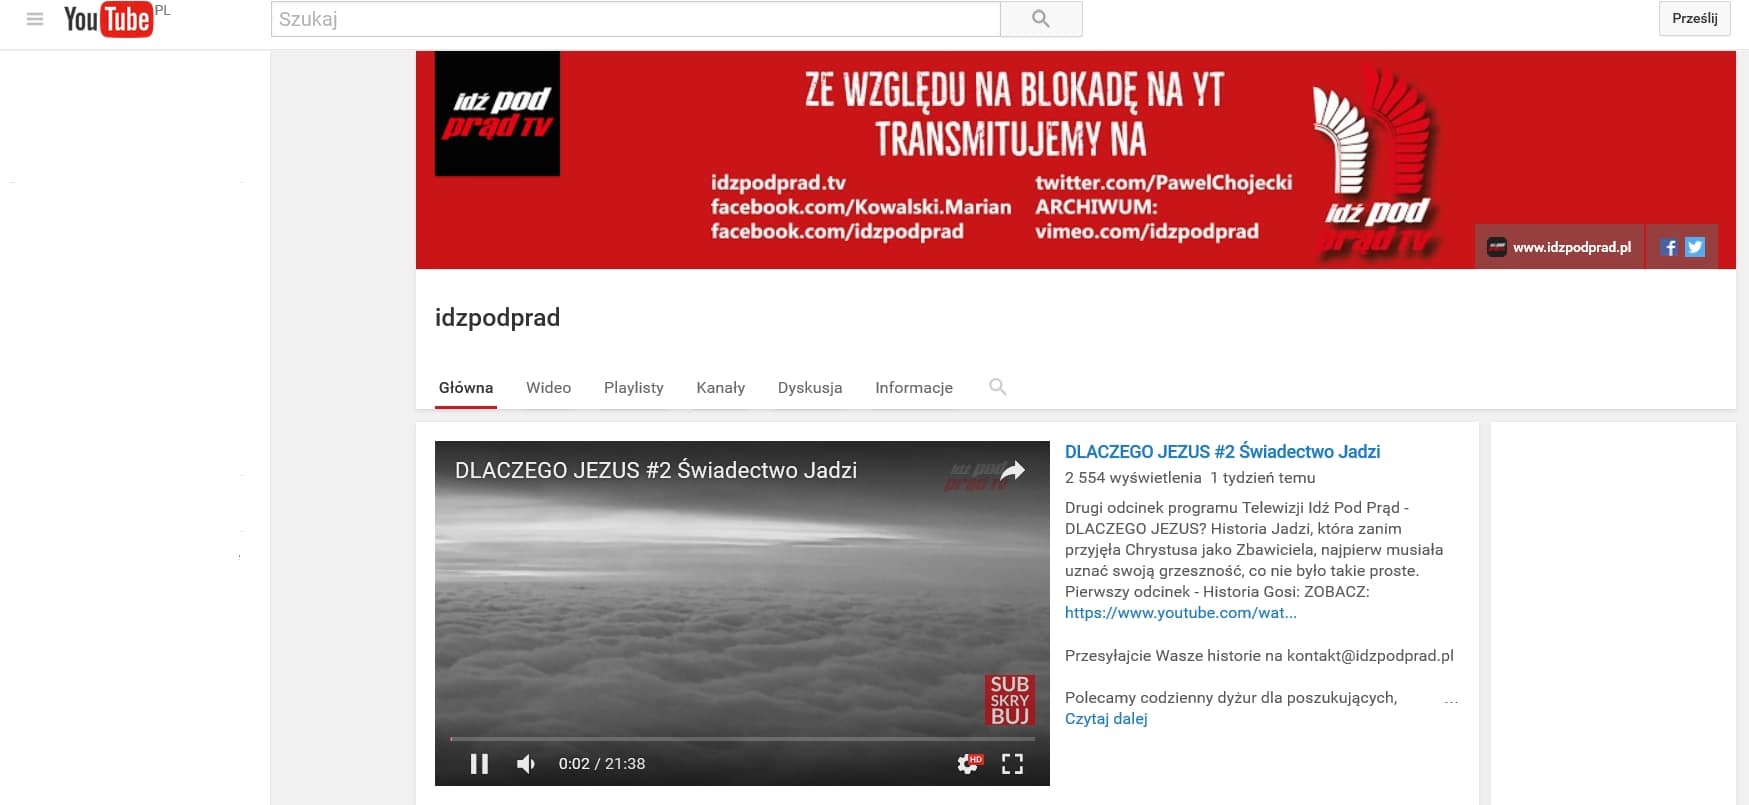 YouTube odblokował nasz kanał IPP!